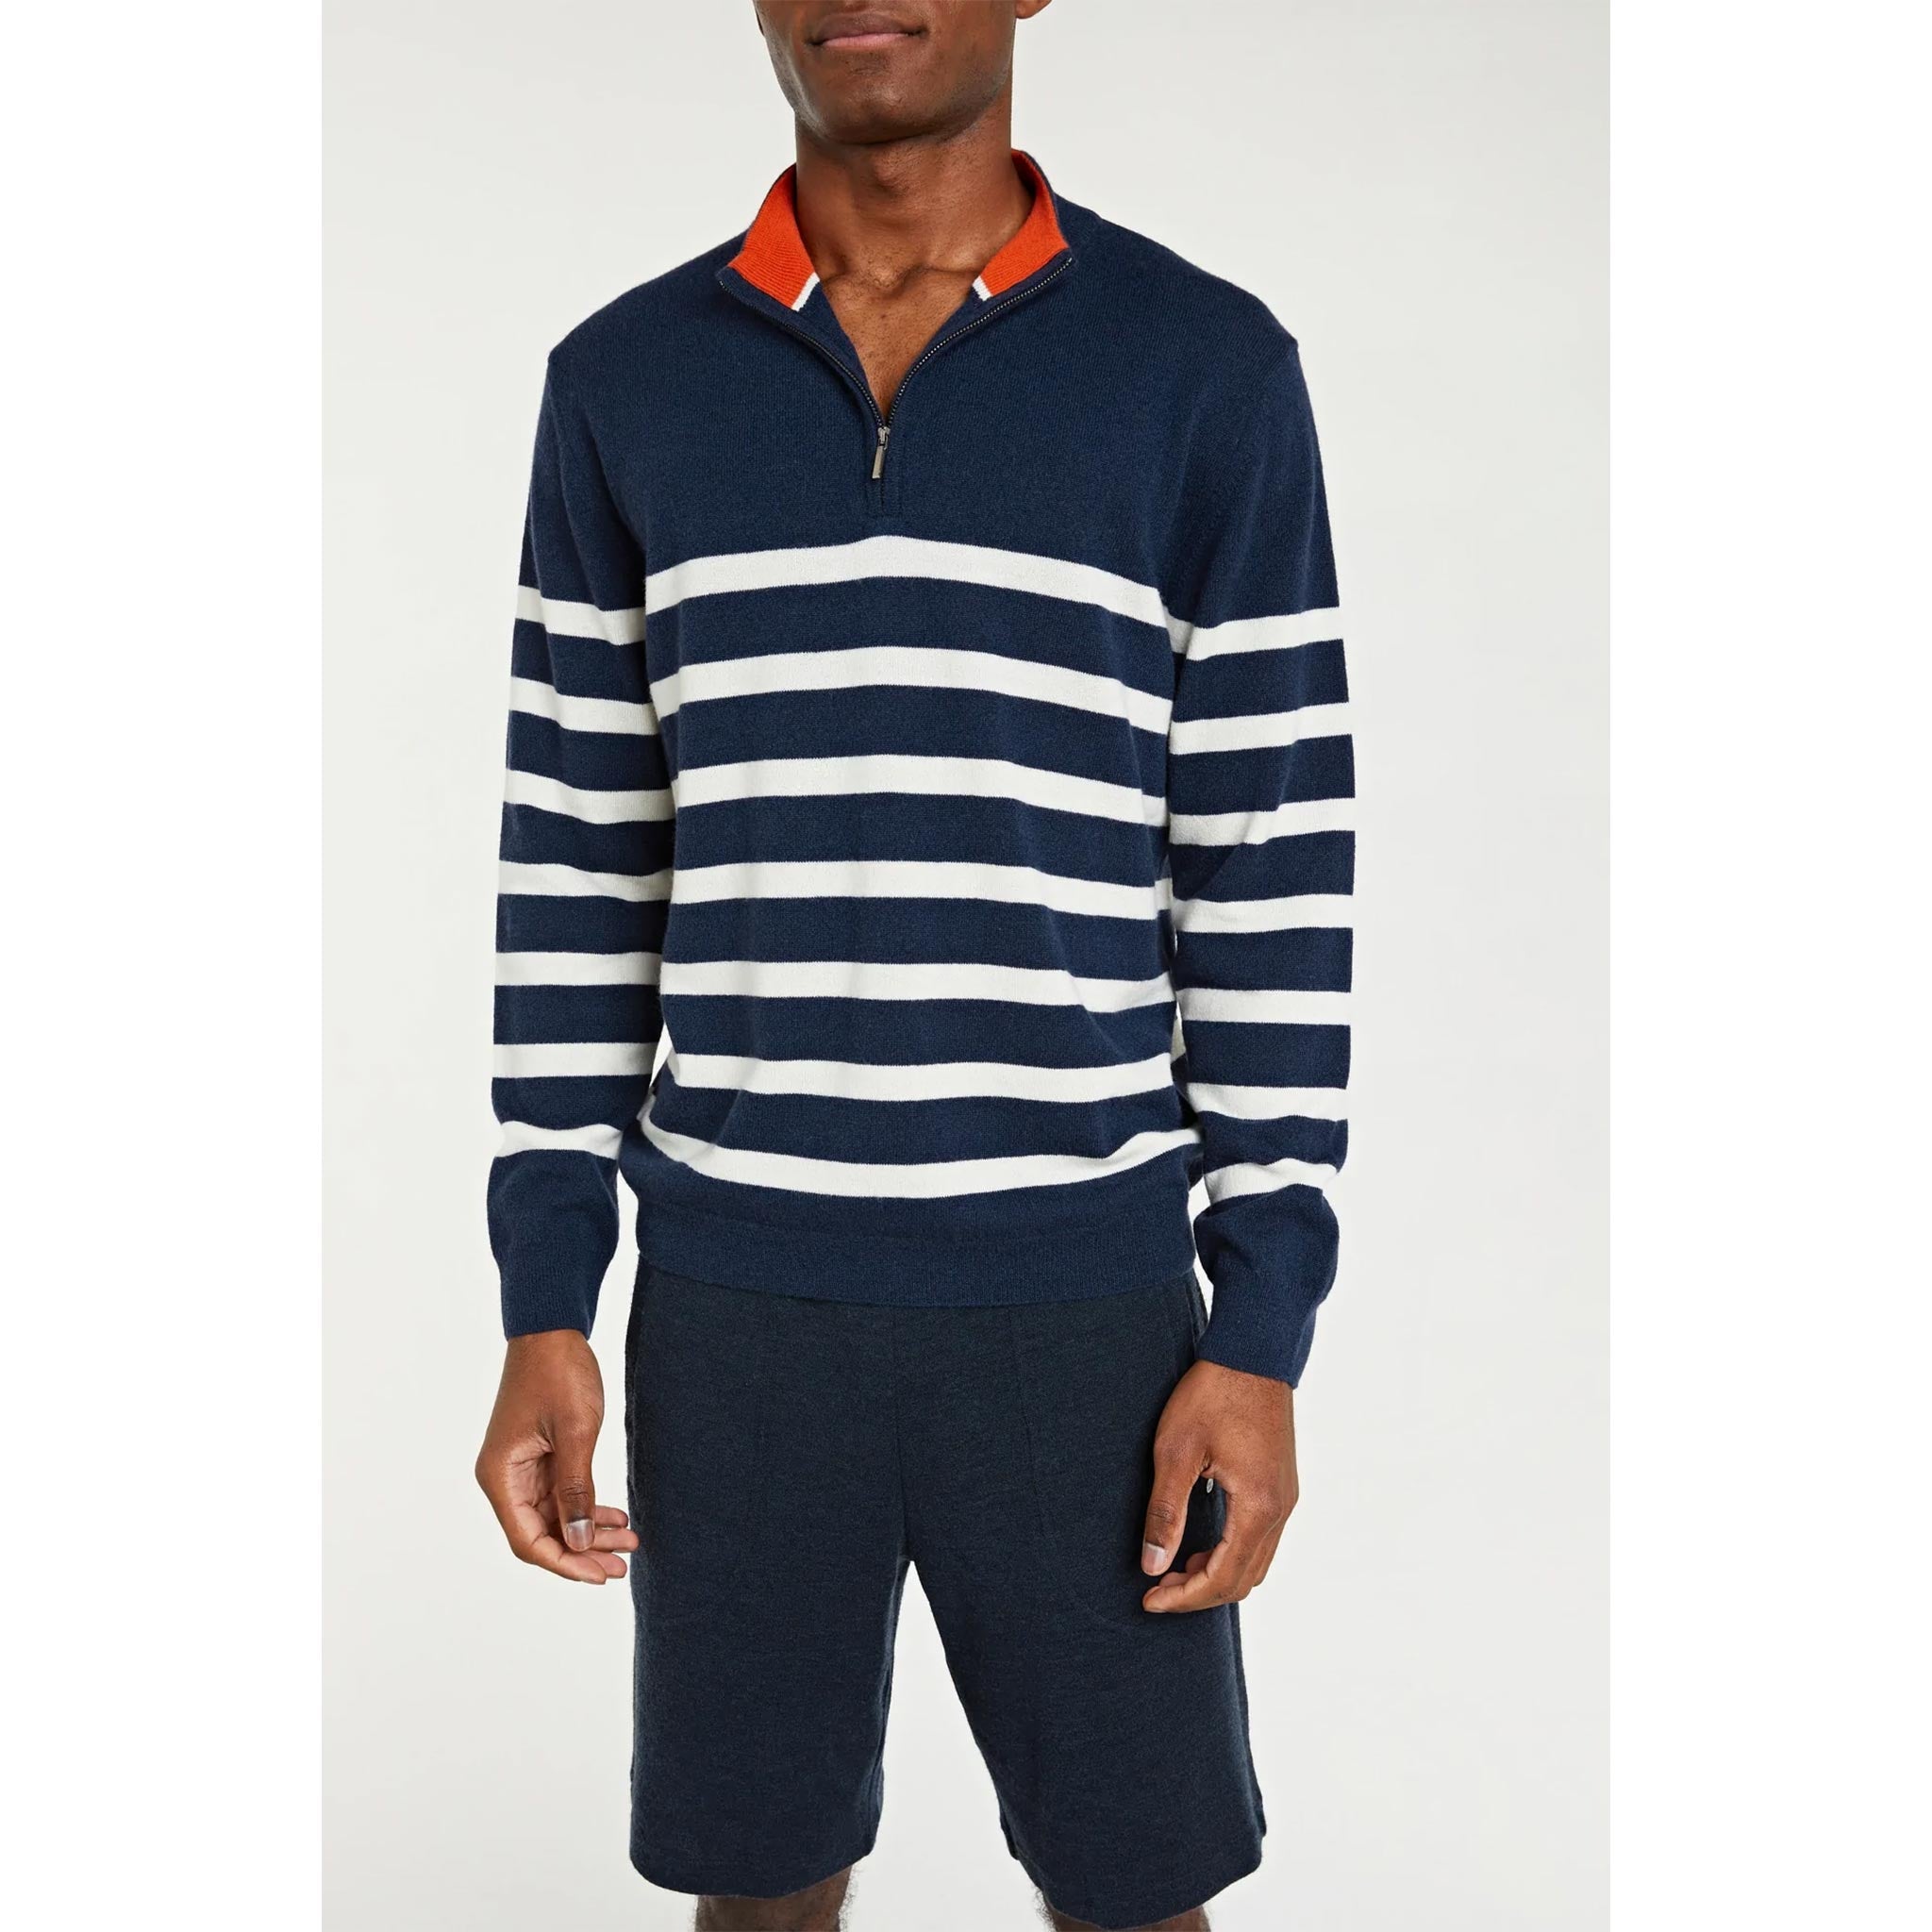 Gullholmen Zip-Up Sweater in Navy/ White Stripes